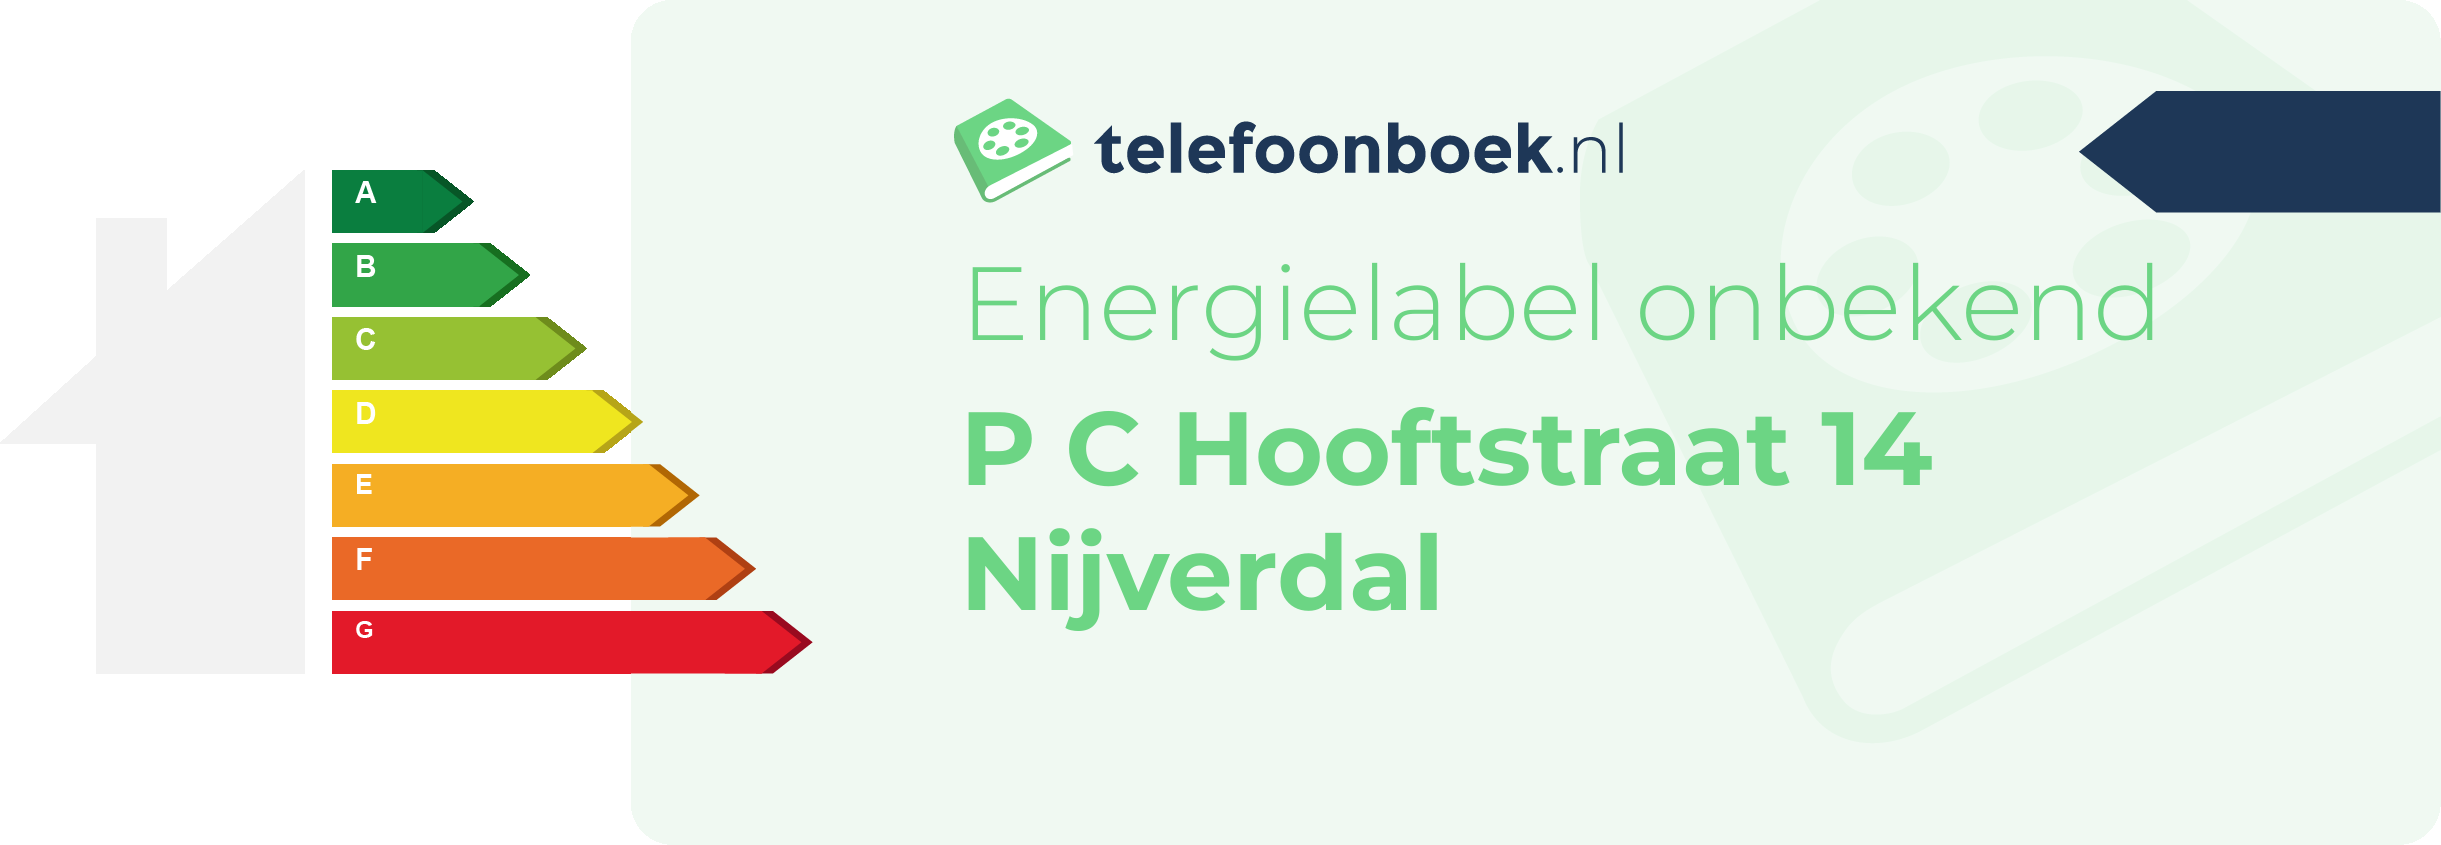 Energielabel P C Hooftstraat 14 Nijverdal